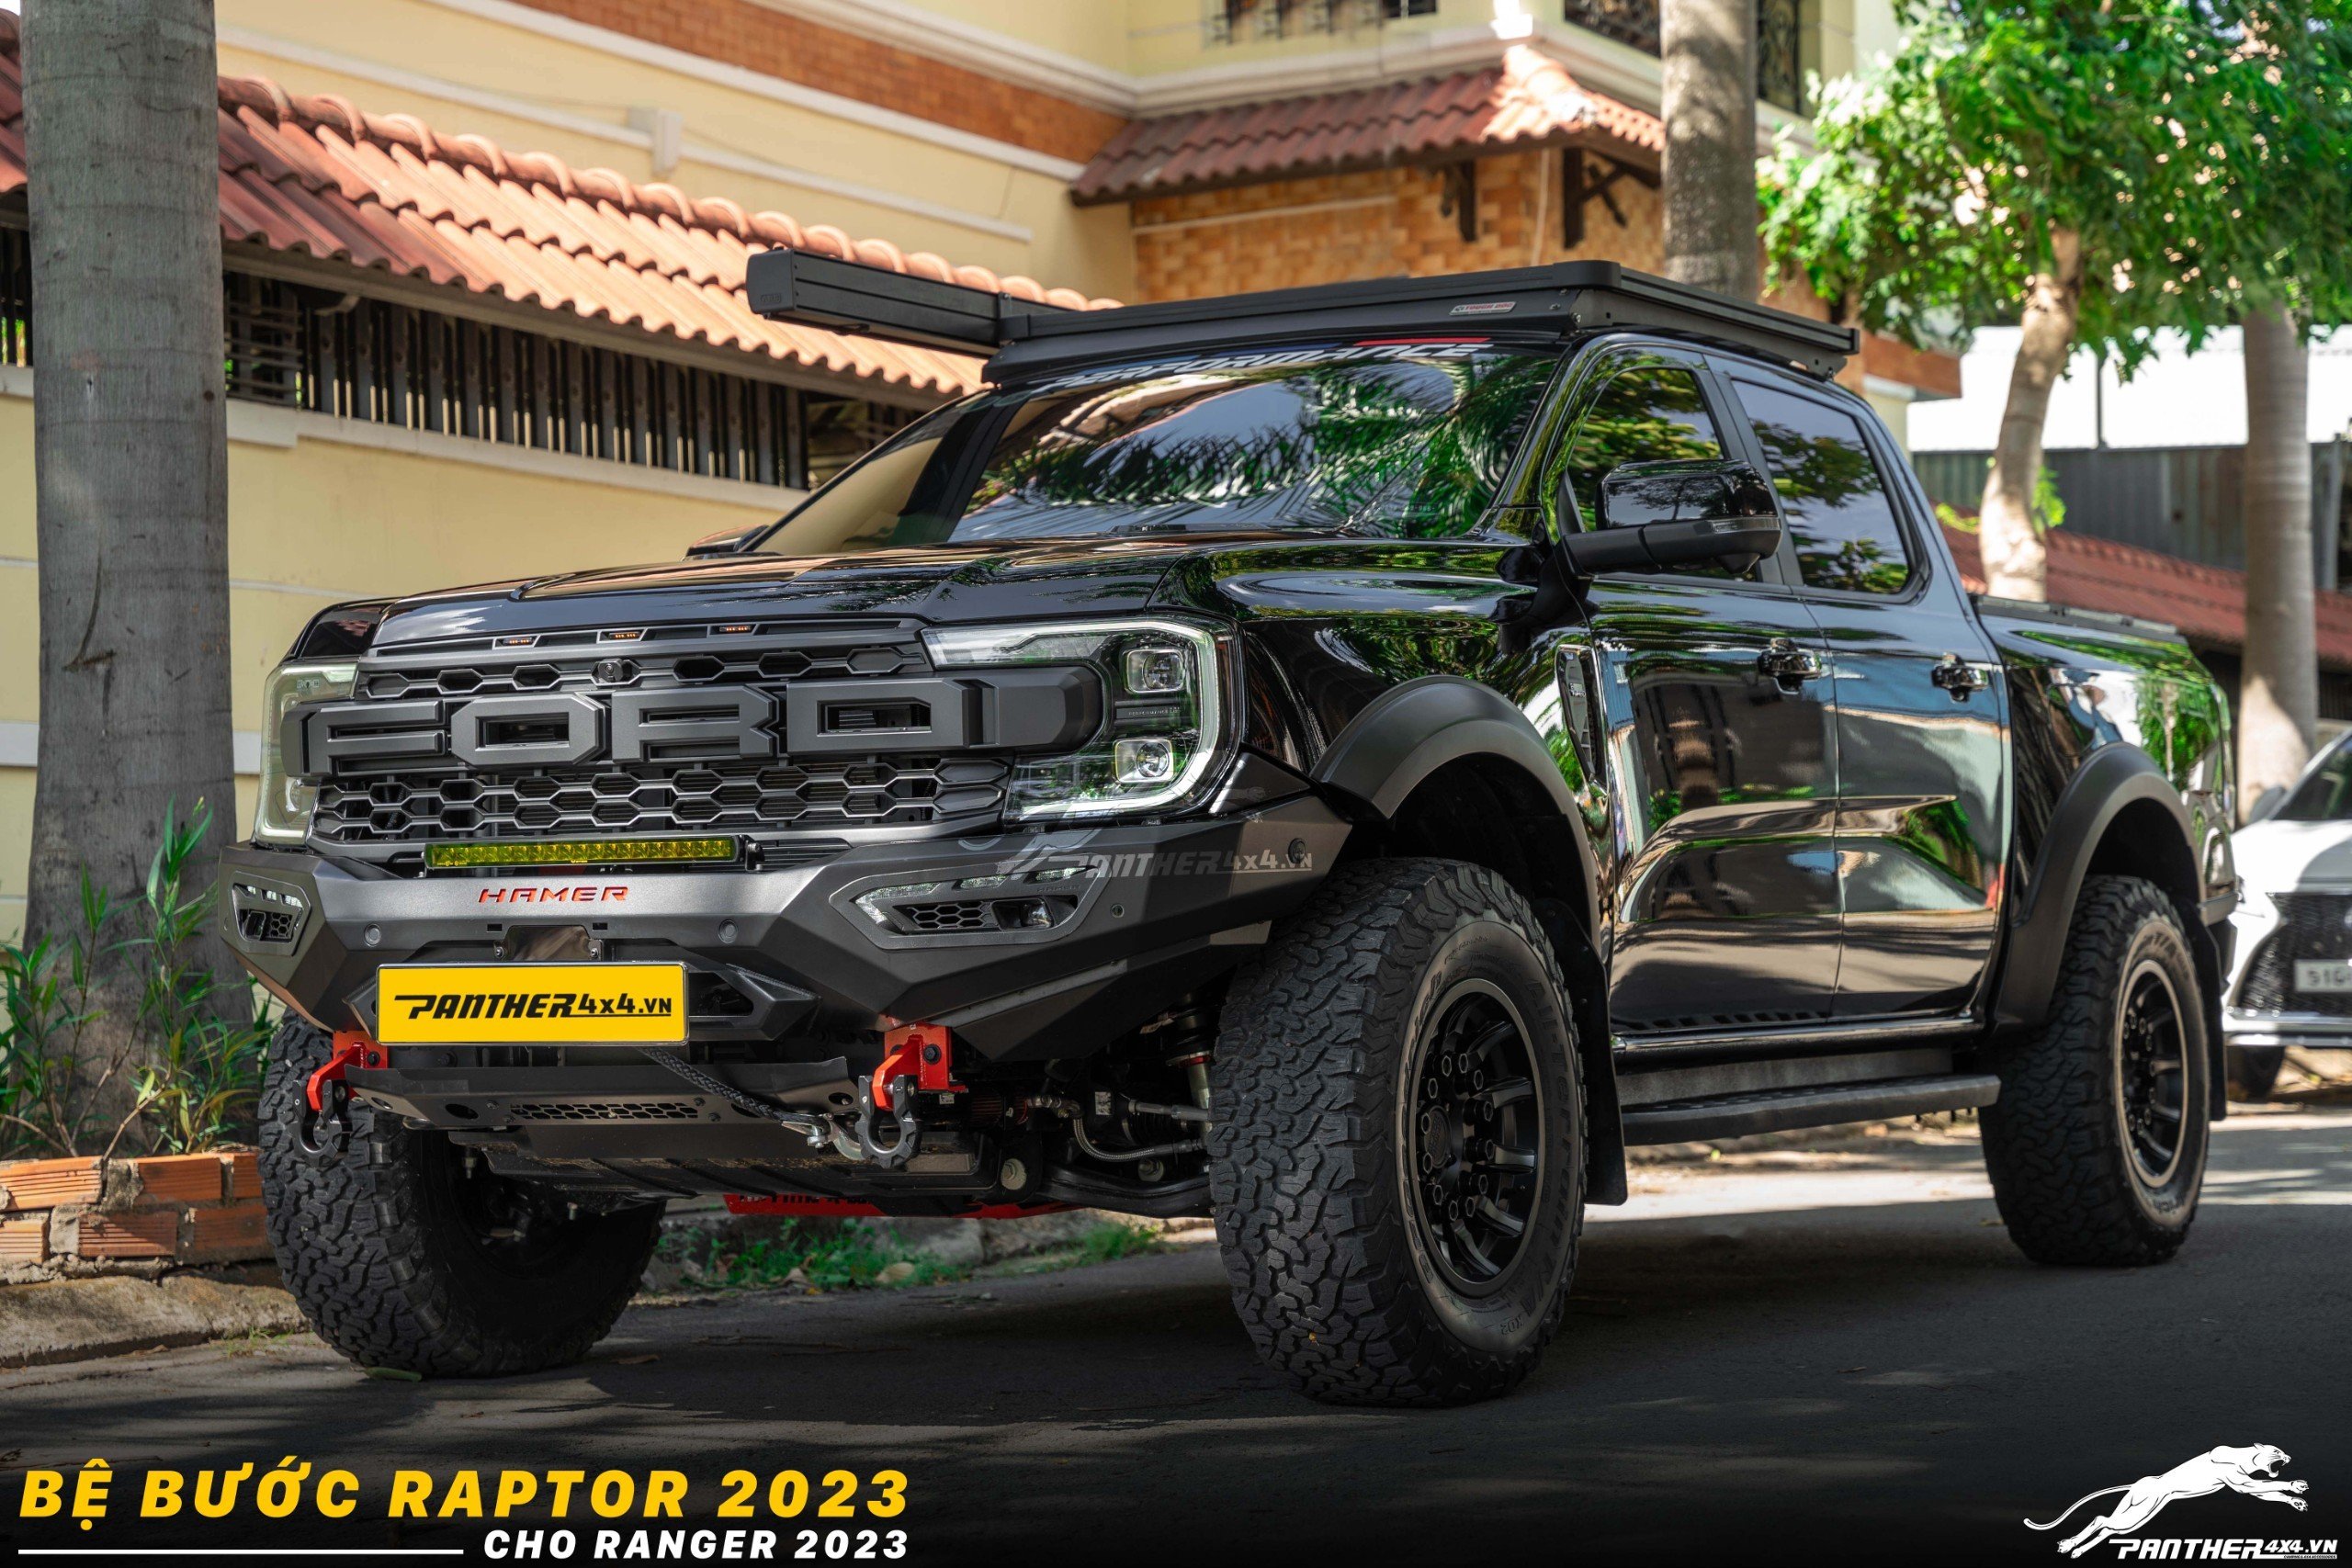 Bệ bước Raptor cho dòng xe Ford Ranger 2023